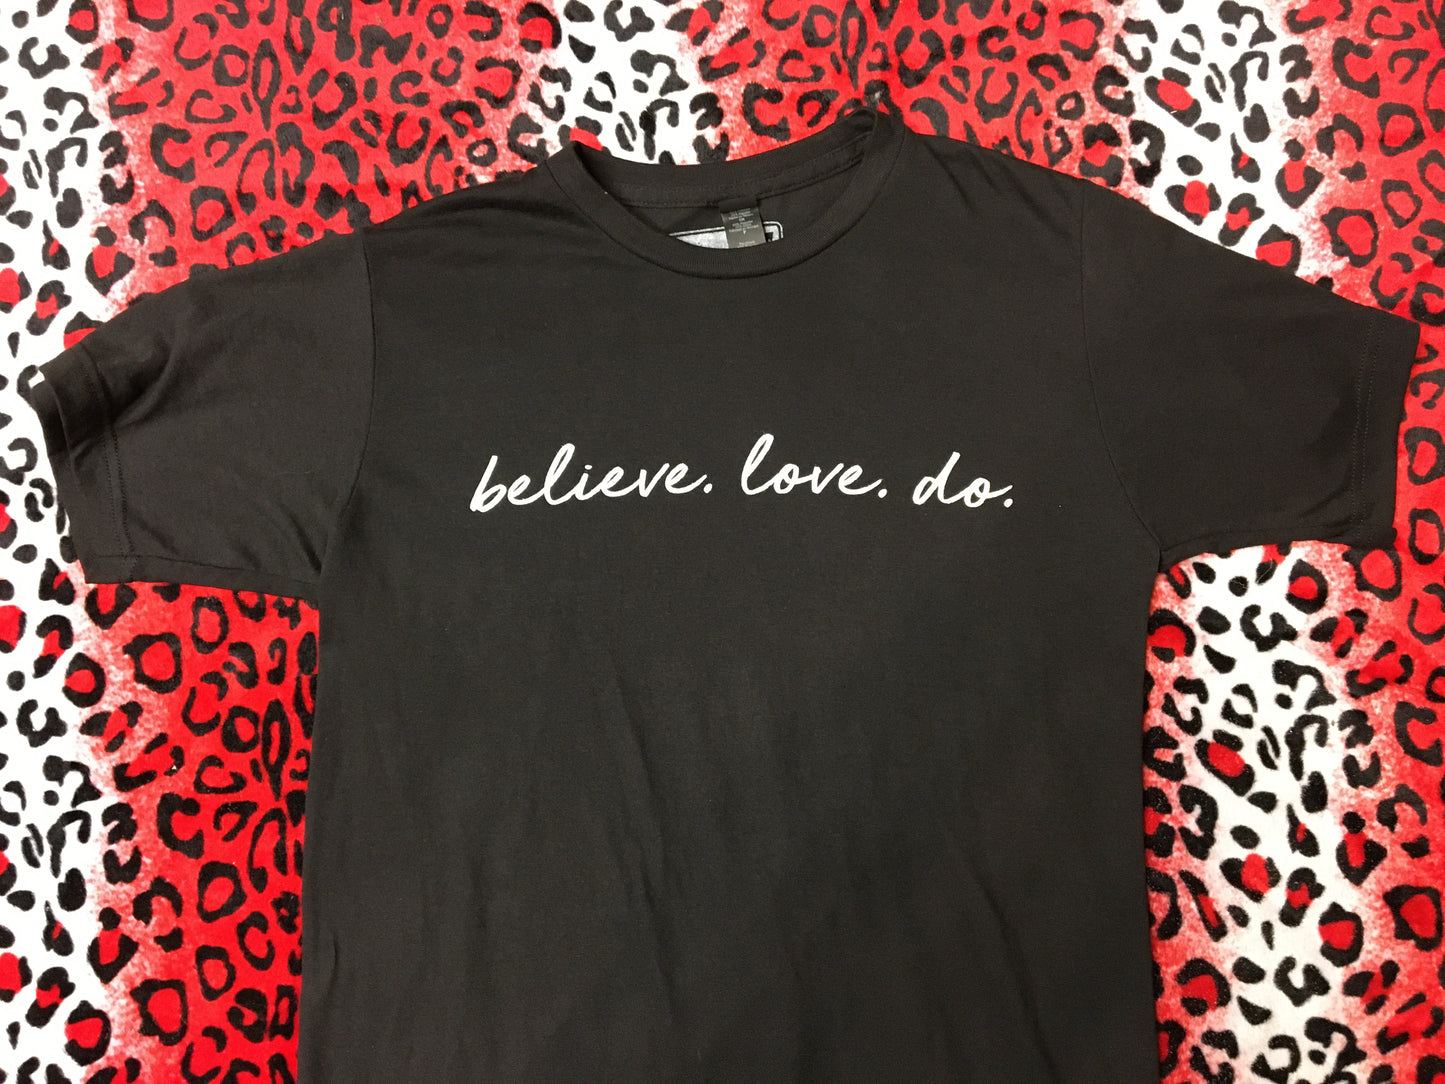 Believe. Love. Do. T-Shirt